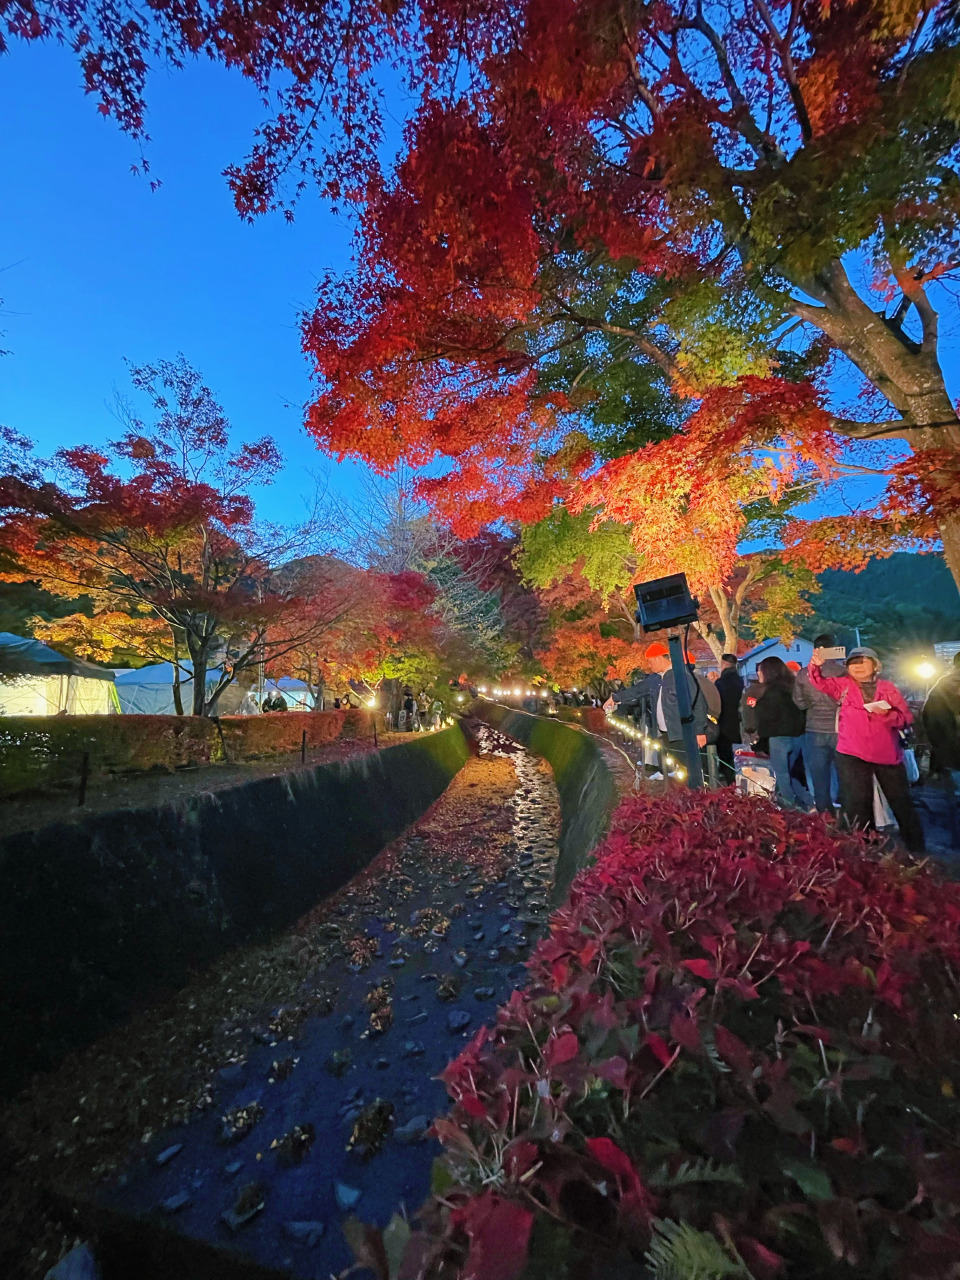 ■枫叶回廊一株株枫叶树以一年中最美的姿态迎客，红叶当头的红色极有层次感。 